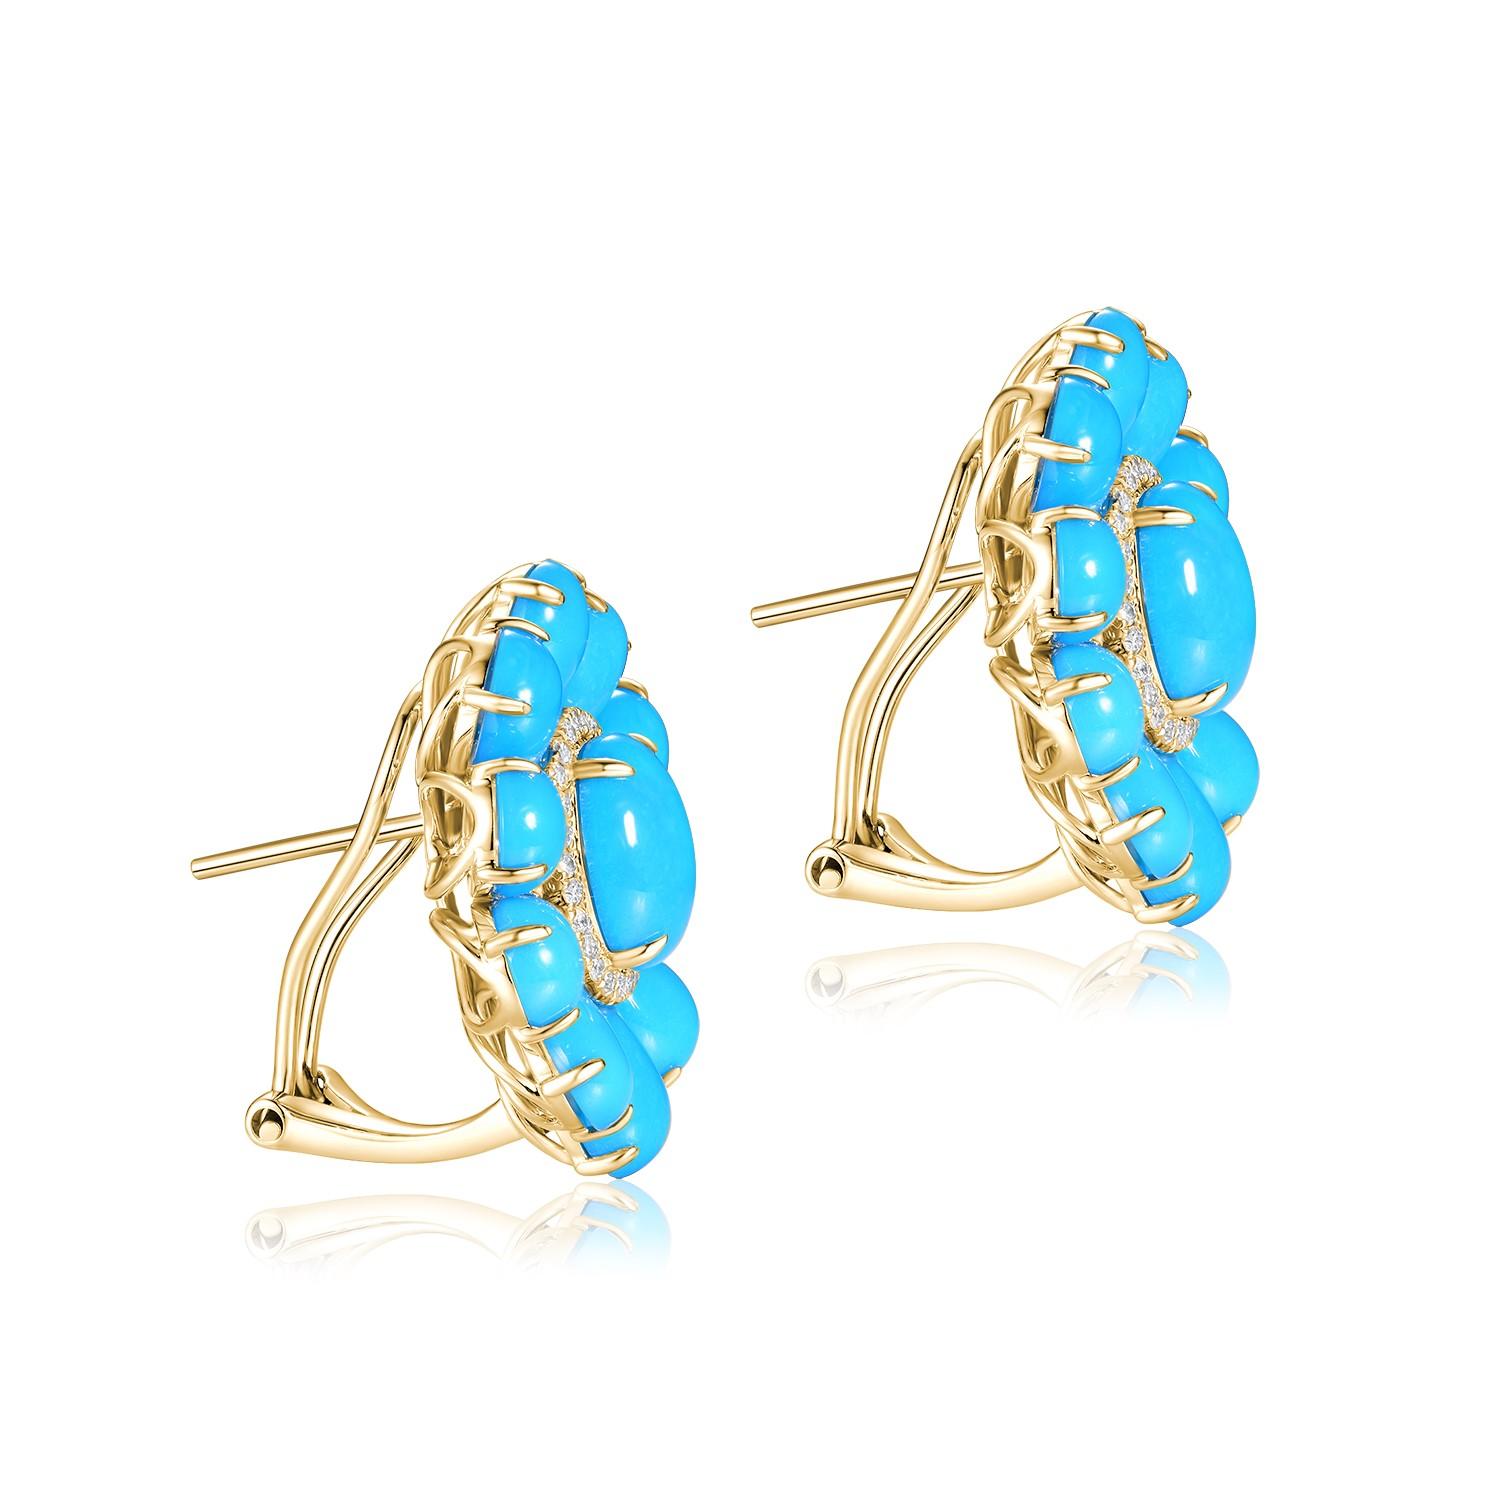 Die Türkis-Diamant-Ohrringe sind ein auffälliges Paar Ohrringe, das die leuchtenden Farben des Türkises und den funkelnden Glanz der Diamanten wunderbar zur Geltung bringt. Die aus 14 Karat Gelbgold gefertigten Ohrringe strahlen Eleganz und